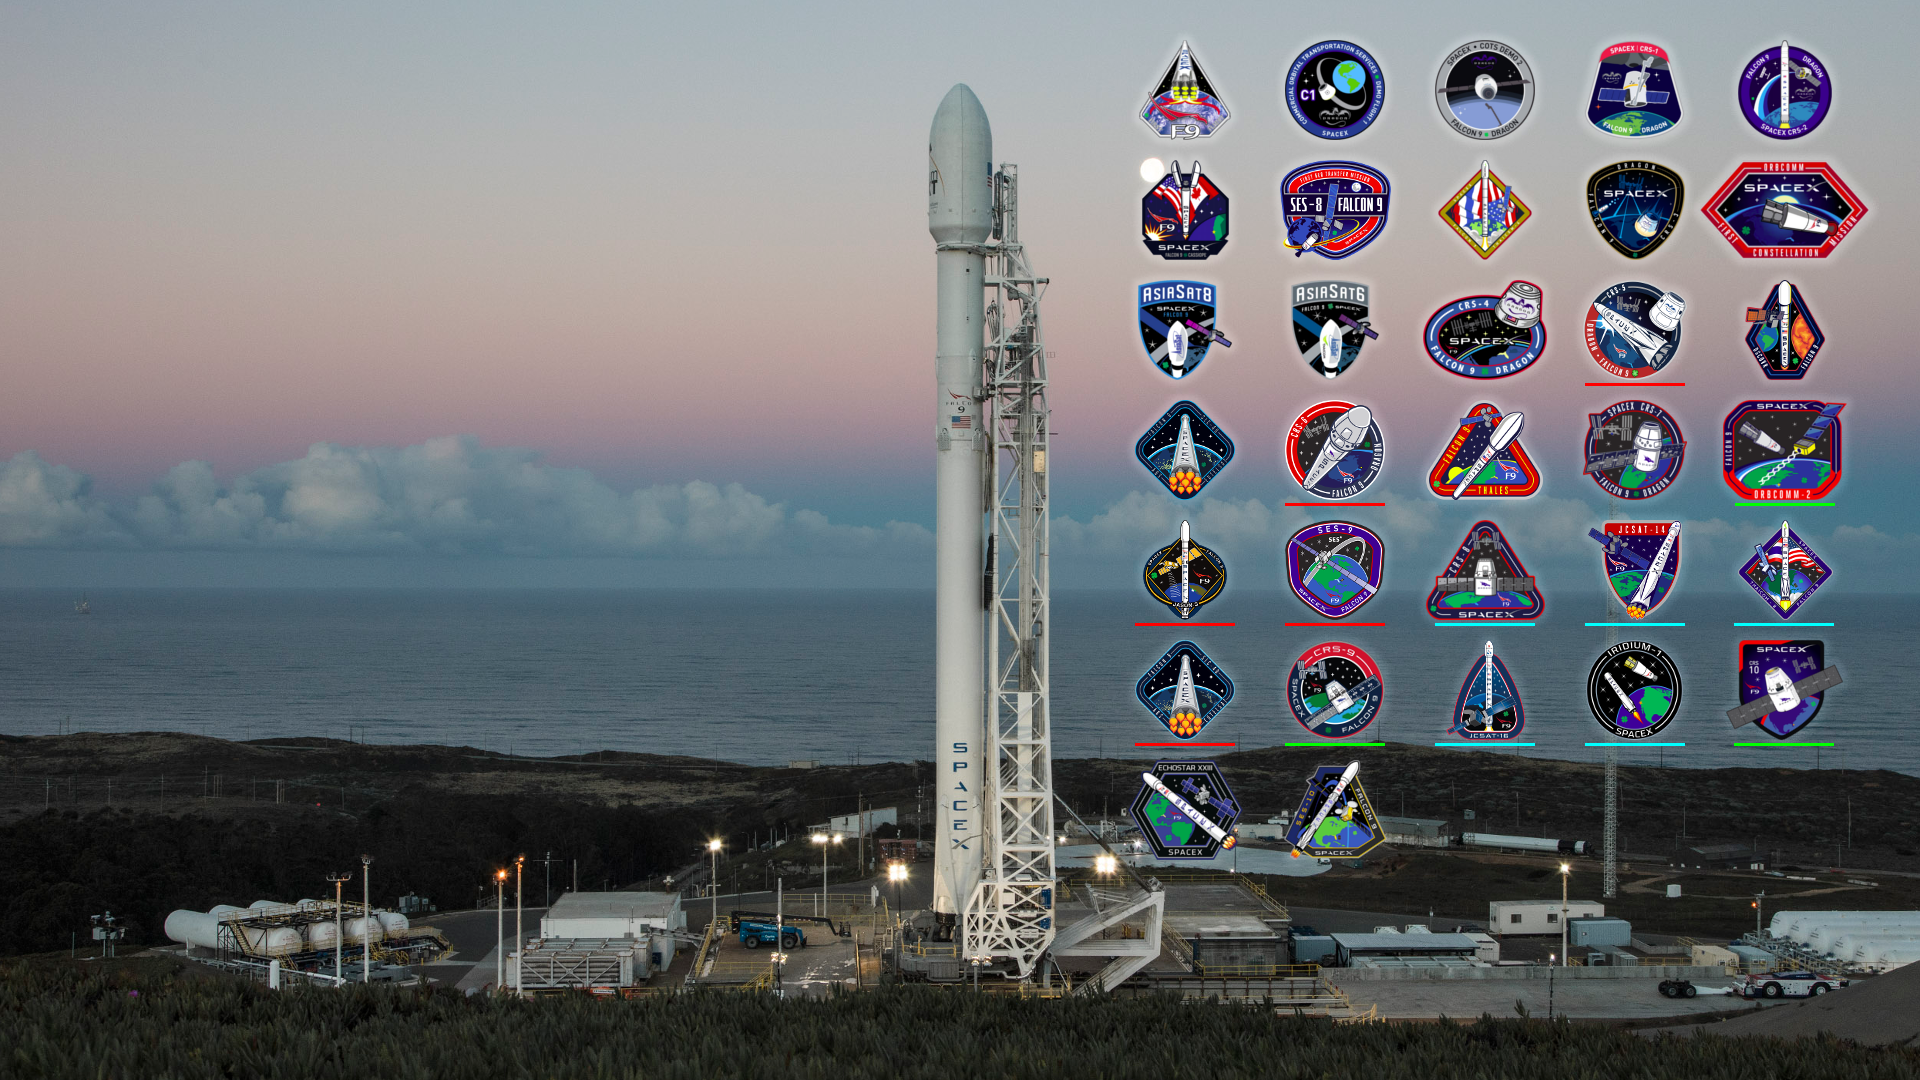 Nhấn chìm vào thế giới ngoài khơi với hình nền SpaceX tuyệt đẹp. Khám phá những tên lửa cùng các vụ phóng tàu vũ trụ và hành trình khám phá không gian thật tuyệt vời.